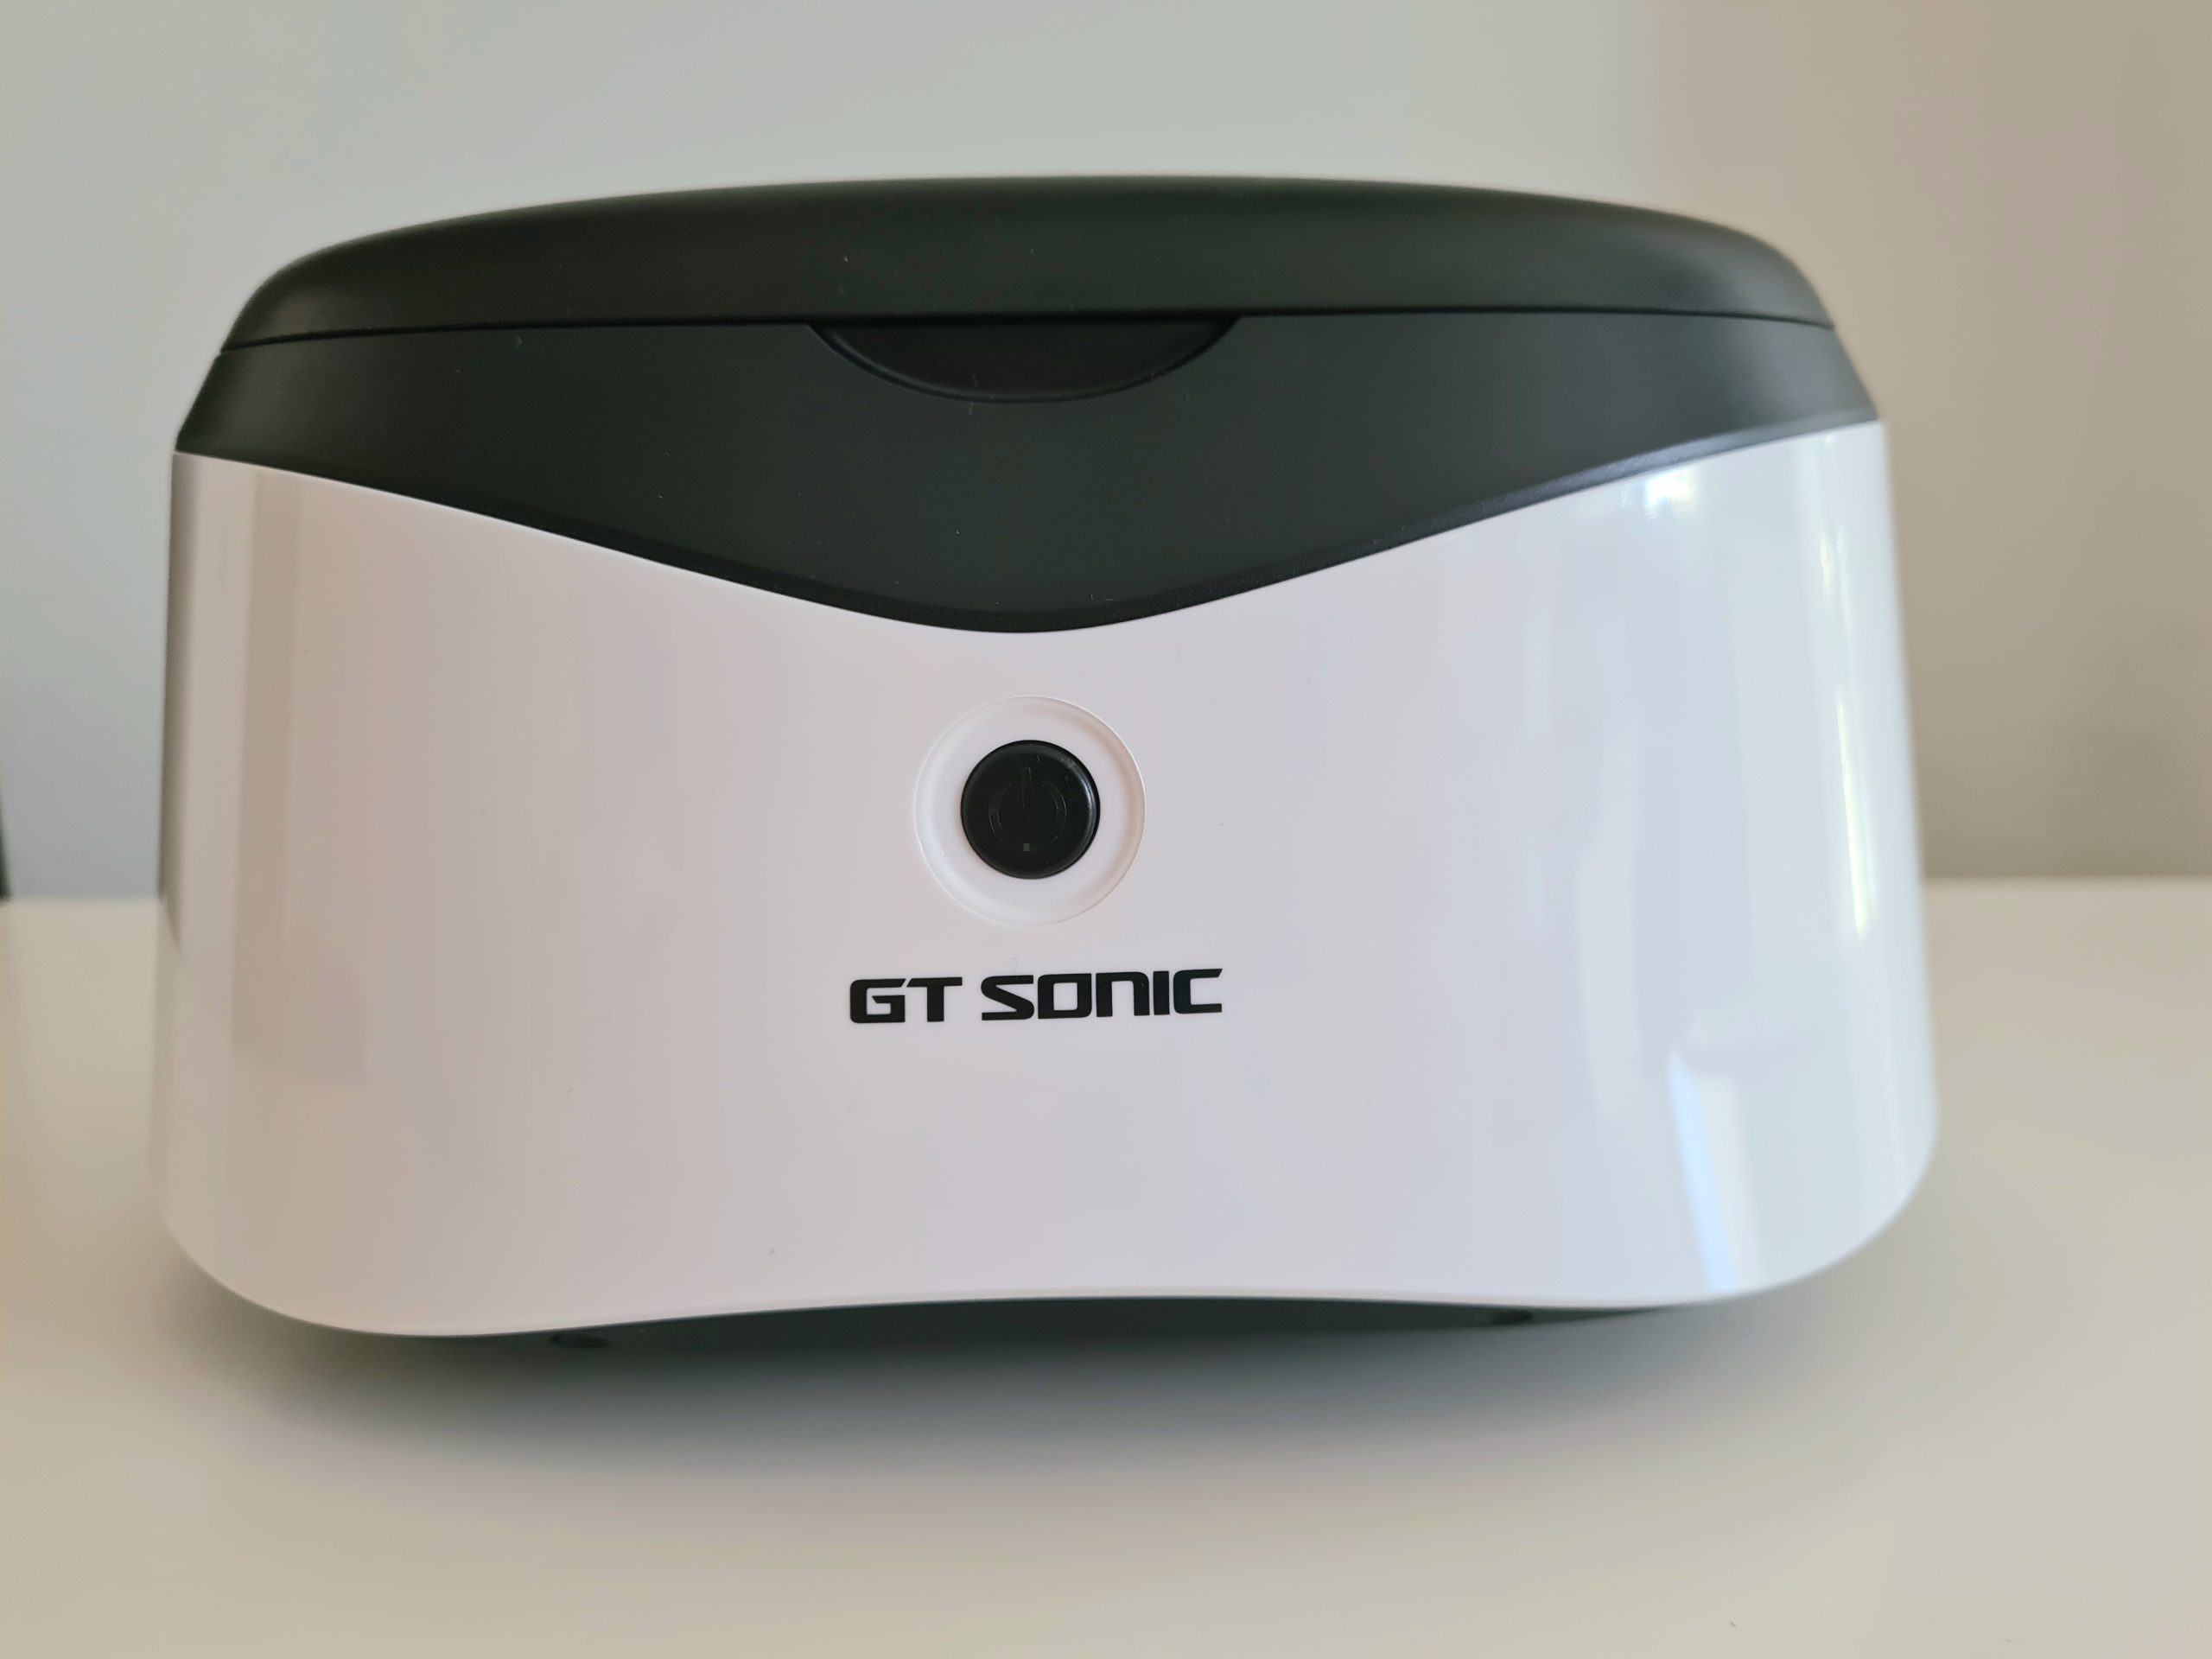 Myjka ultradźwiękowa – opinie i test GT Sonic do czyszczenia biżuterii i okularów 